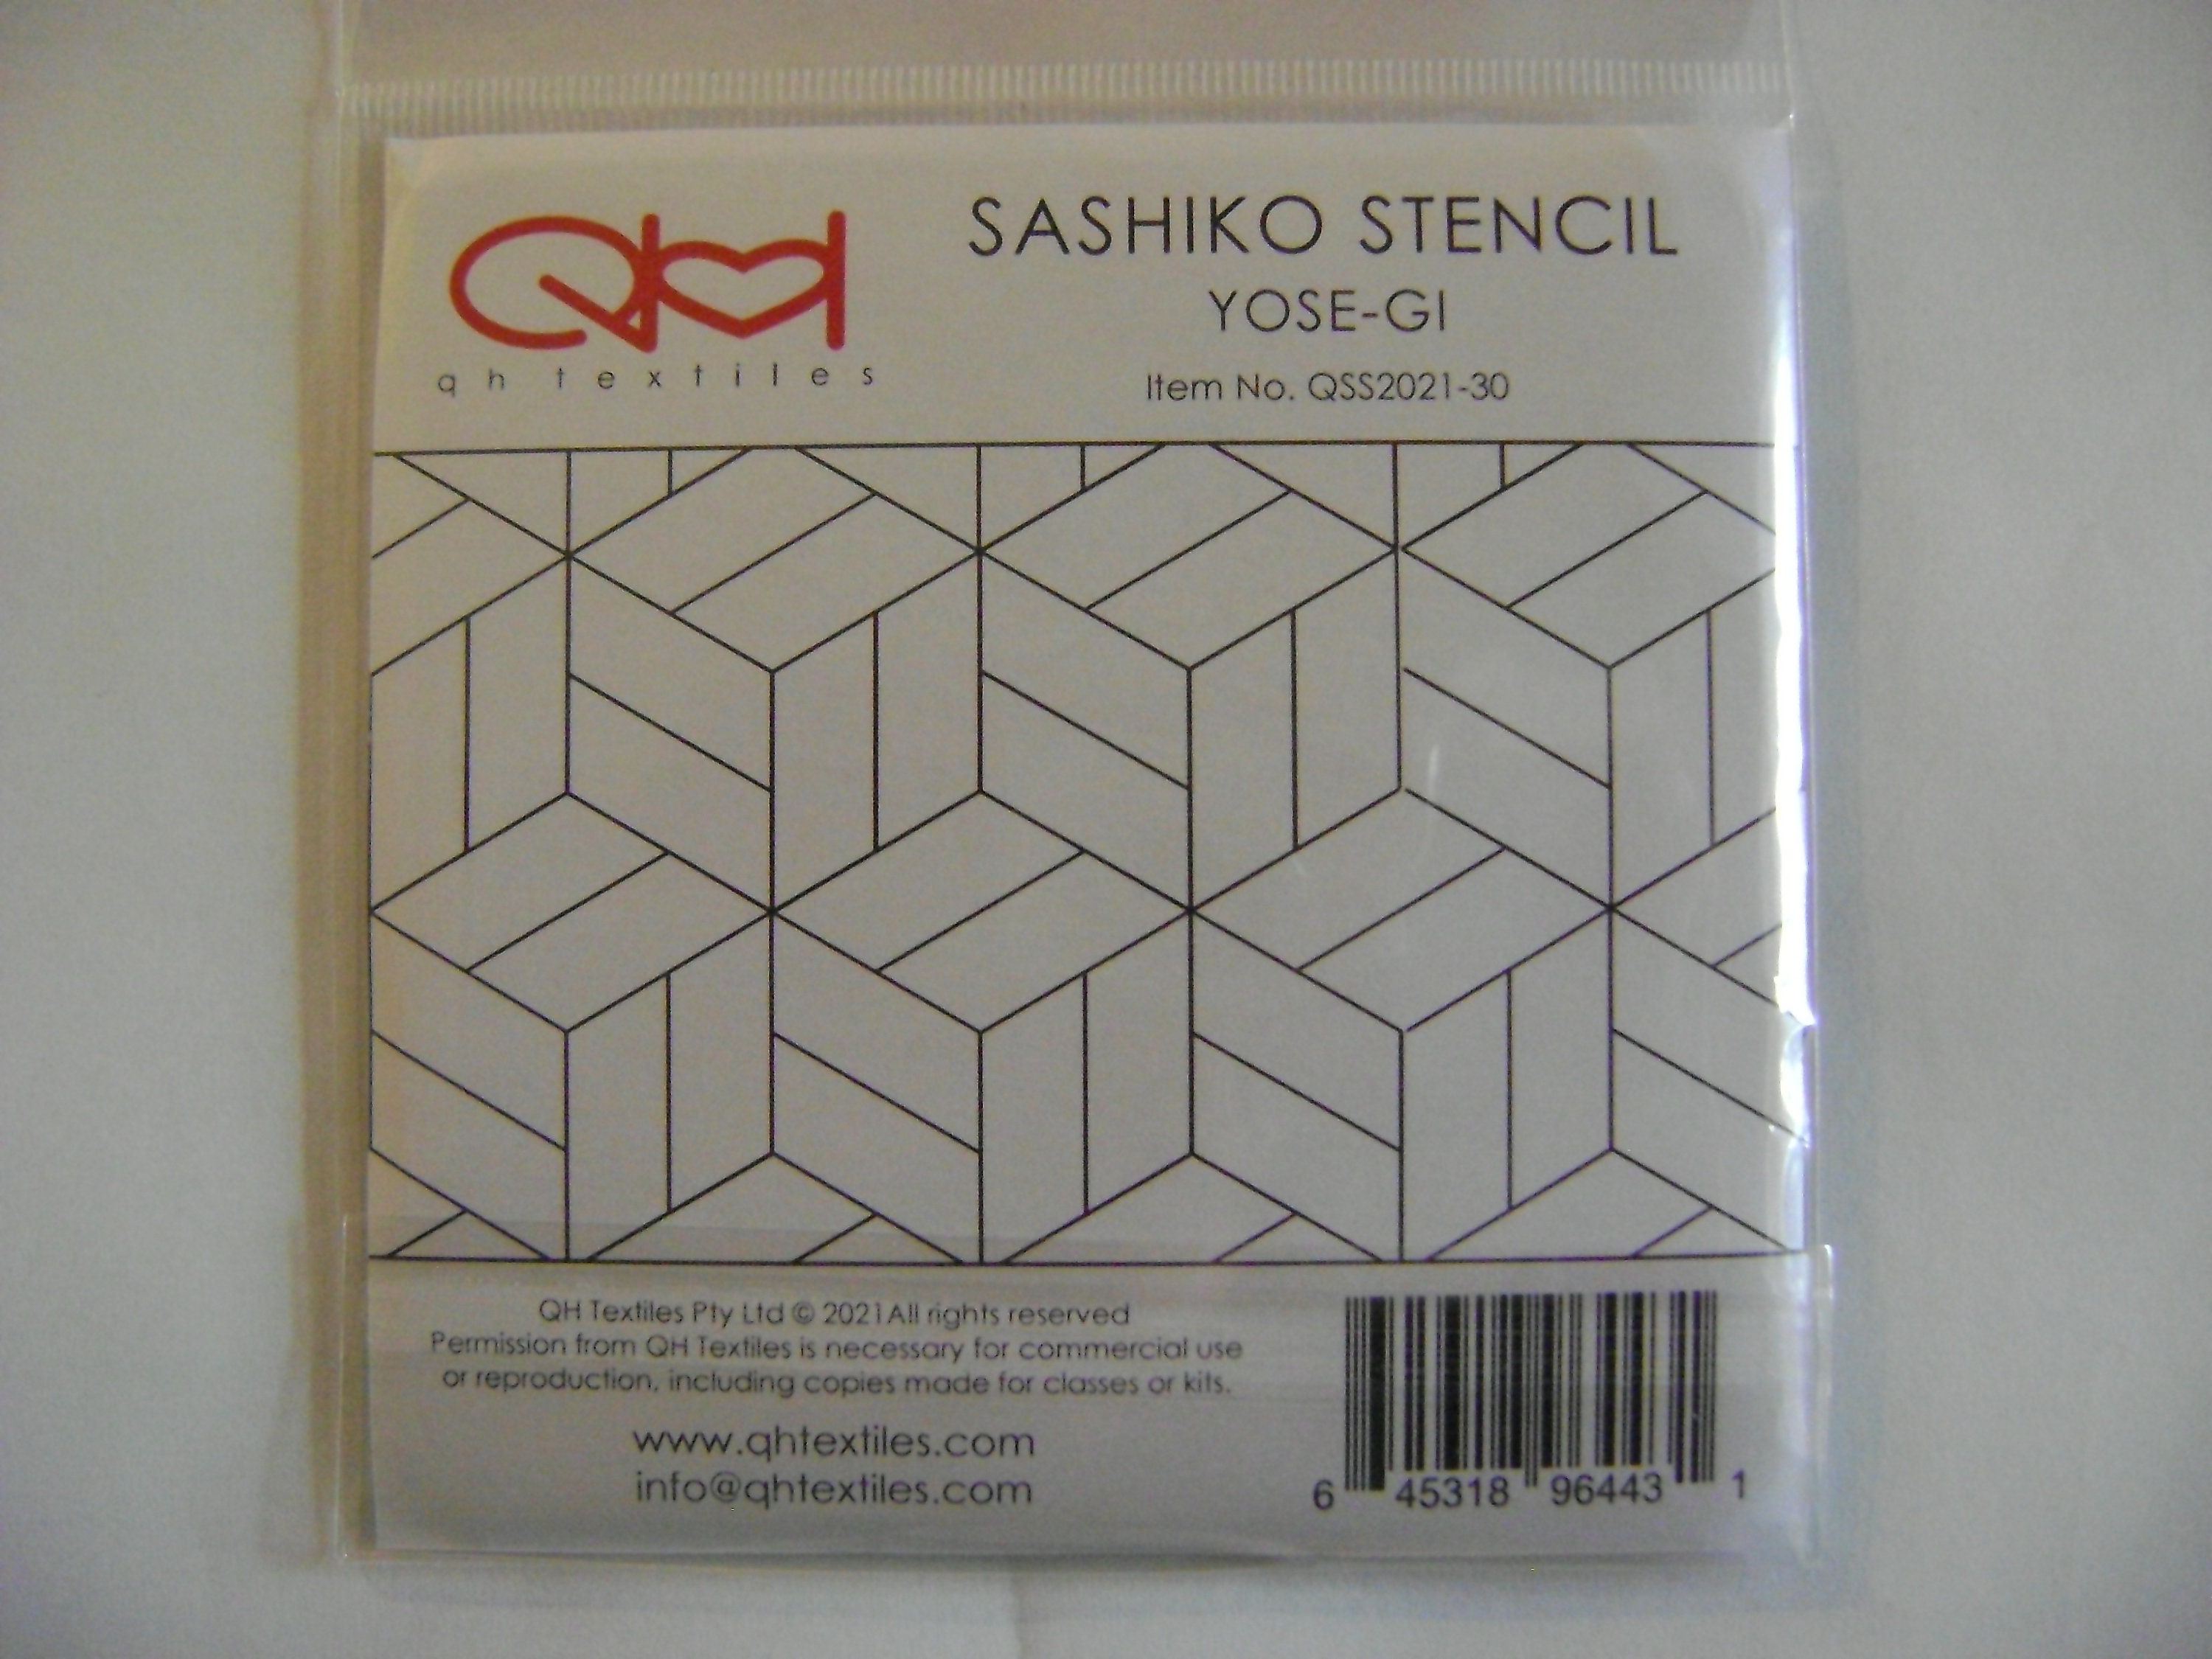 Sashiko Stencil Yose-Gi